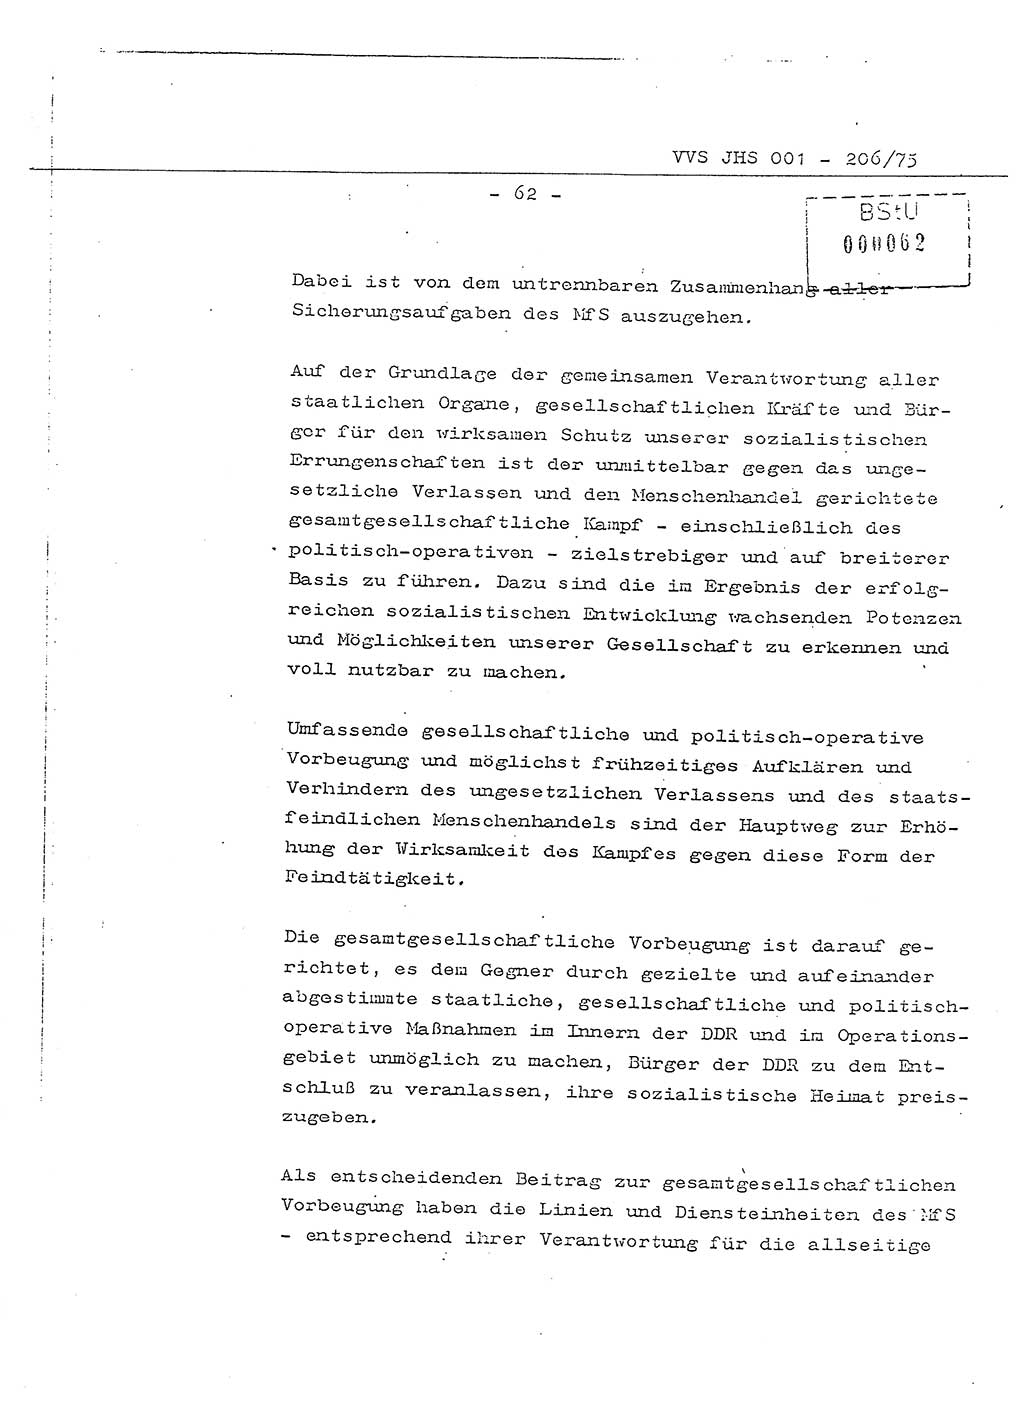 Dissertation Generalmajor Manfred Hummitzsch (Leiter der BV Leipzig), Generalmajor Heinz Fiedler (HA Ⅵ), Oberst Rolf Fister (HA Ⅸ), Ministerium für Staatssicherheit (MfS) [Deutsche Demokratische Republik (DDR)], Juristische Hochschule (JHS), Vertrauliche Verschlußsache (VVS) 001-206/75, Potsdam 1975, Seite 62 (Diss. MfS DDR JHS VVS 001-206/75 1975, S. 62)